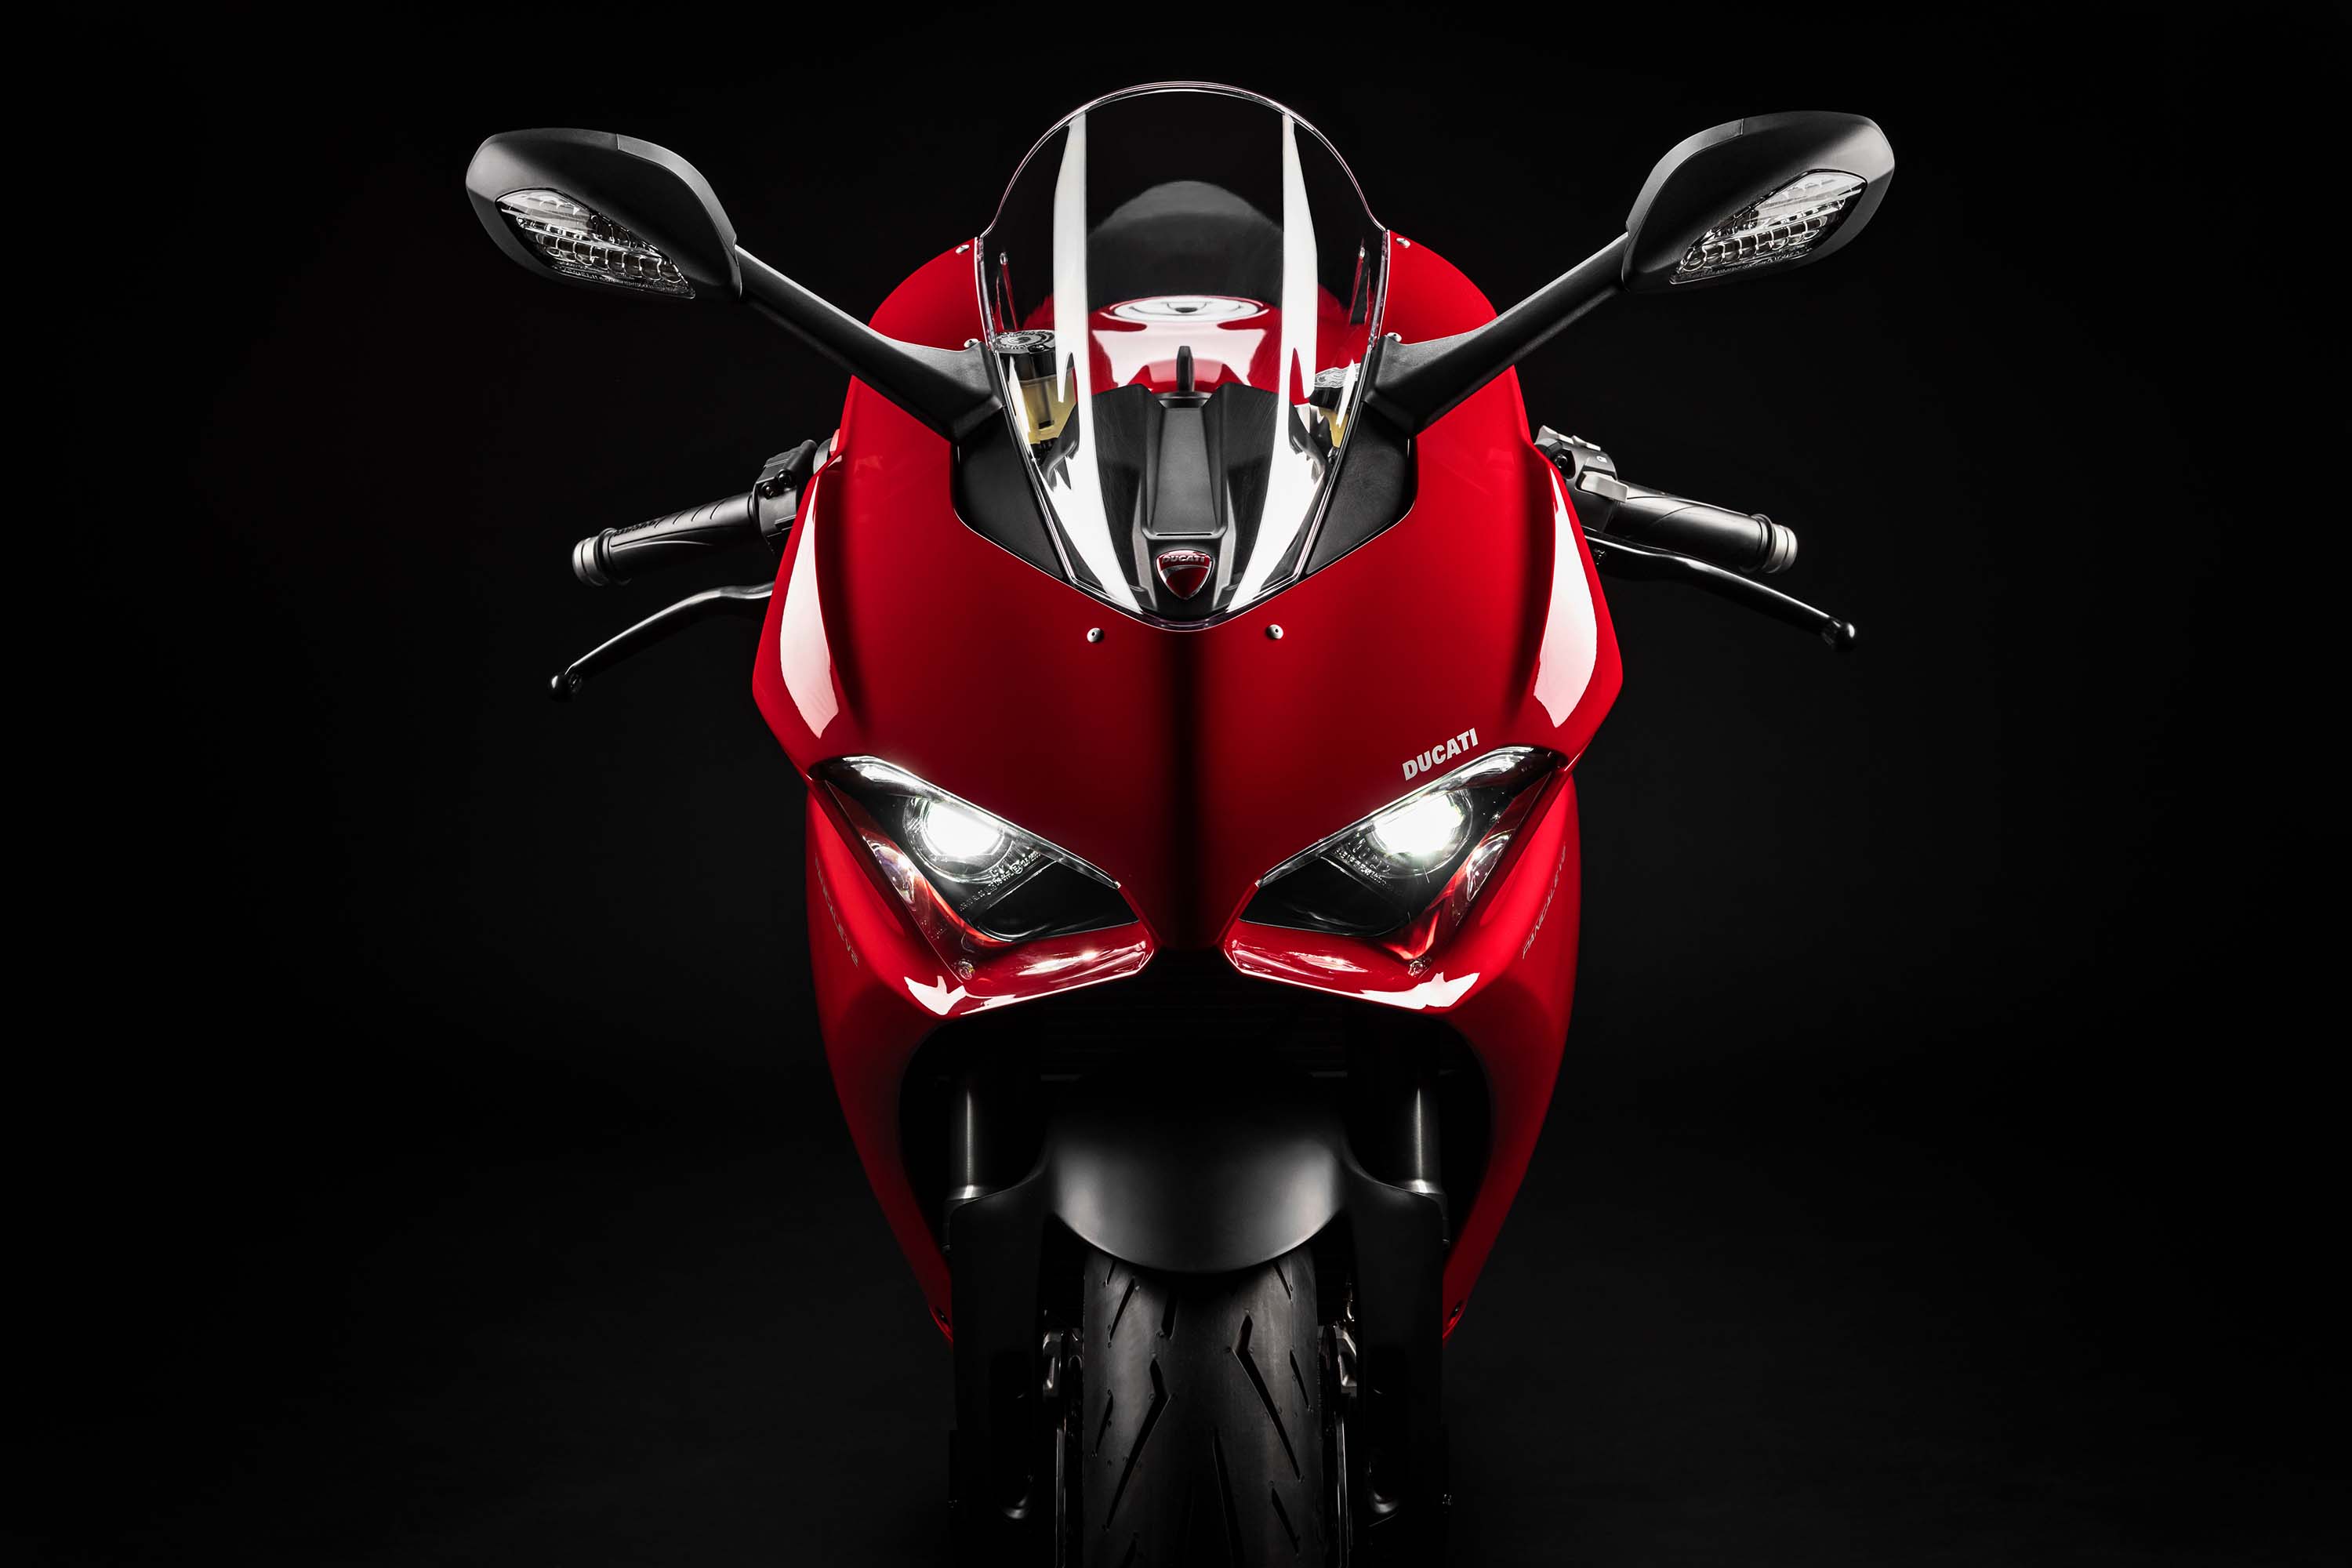 Представлен спортбайк Ducati Panigale V2 2020